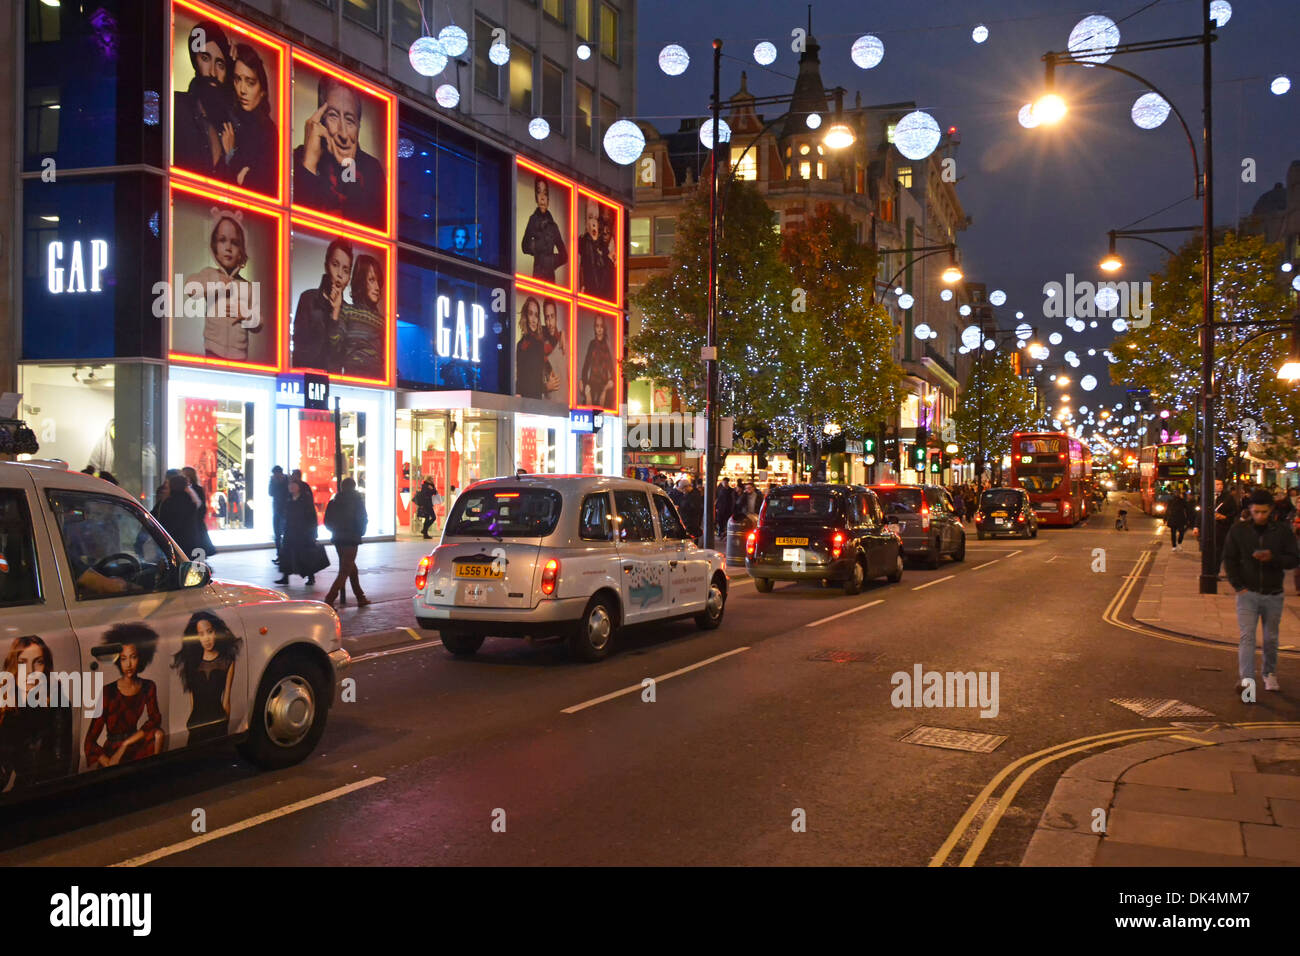 Oxford Street West End of London Taxis stehen in der Shopping Street Szene vor Gap Bekleidungsgeschäft Nacht beleuchtete Weihnachtsdekoration England Großbritannien Stockfoto